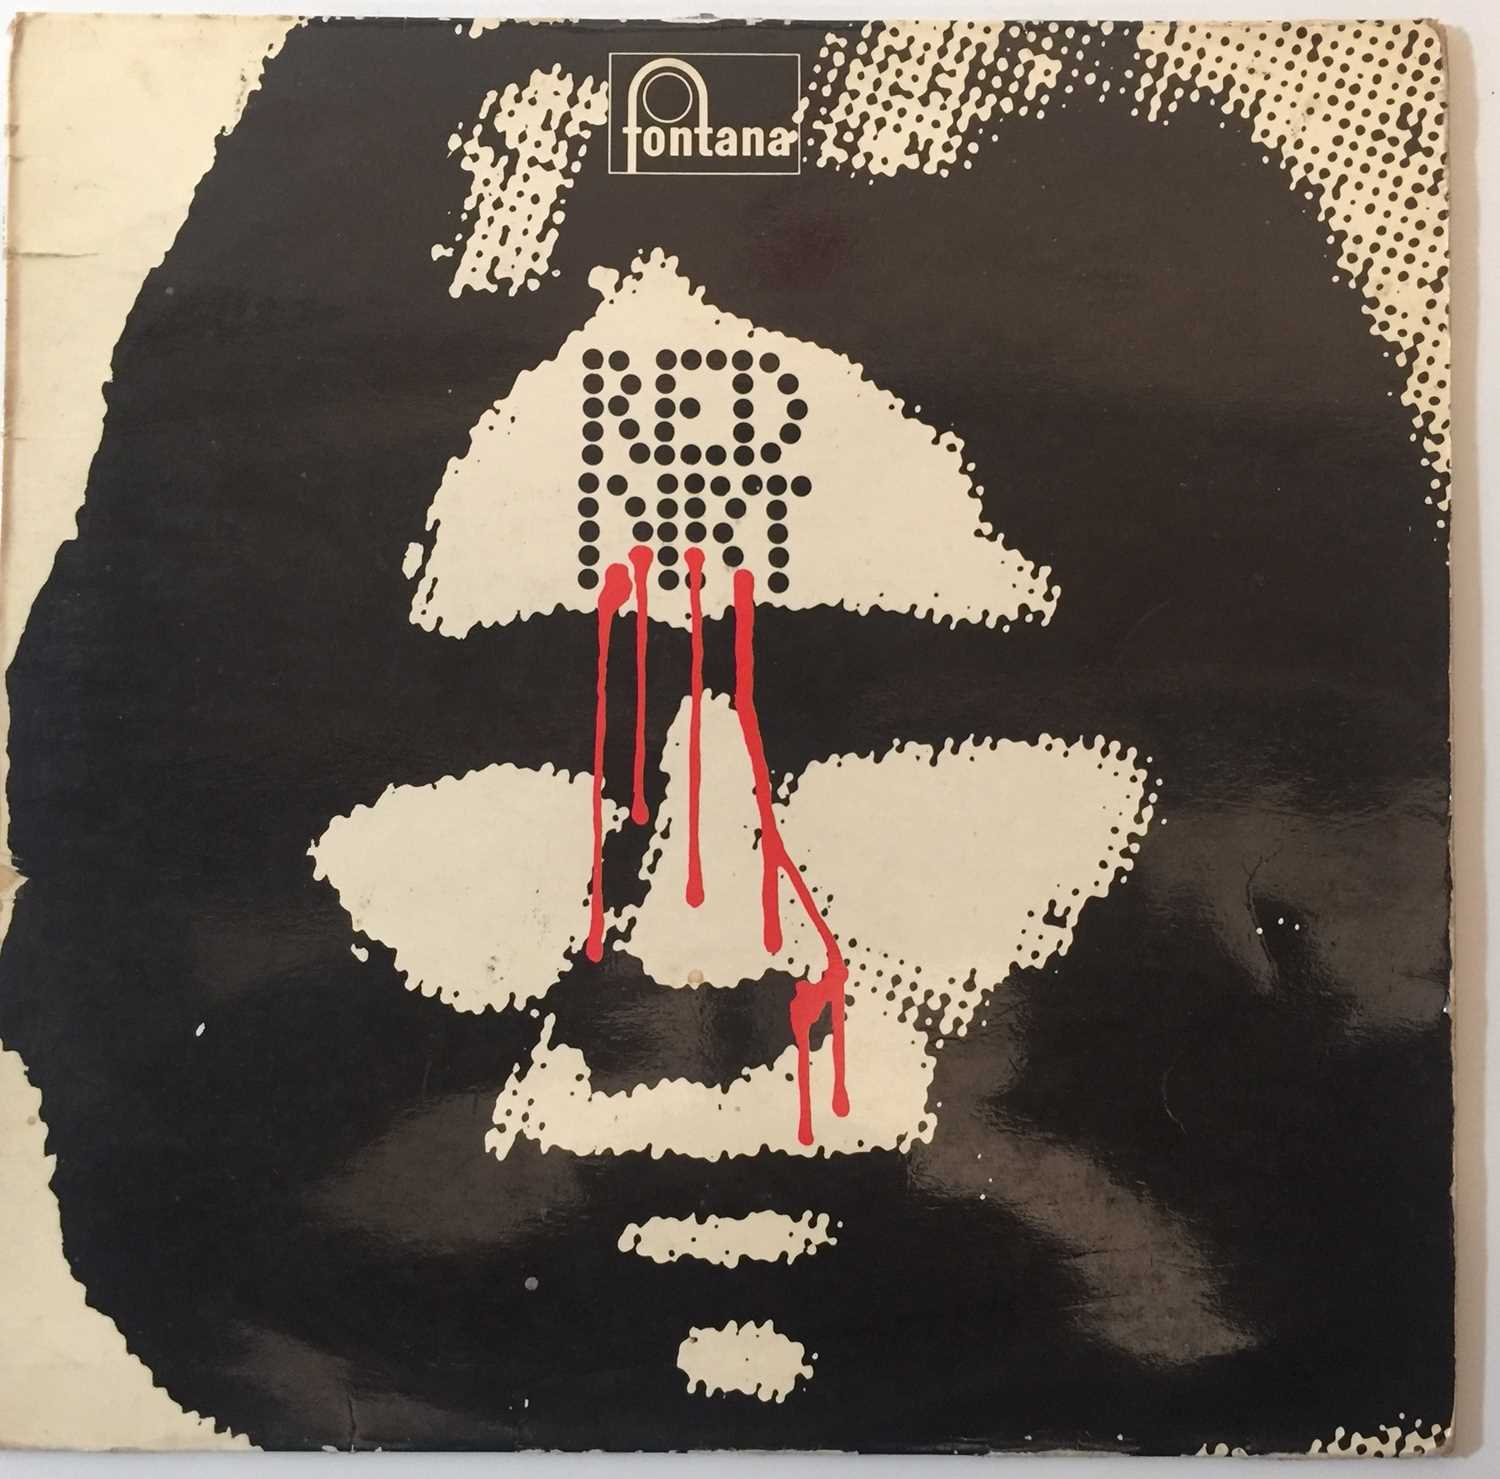 Lot 1019 - Red Dirt - Red Dirt LP (Original UK Pressing - Fontana STL 5540)